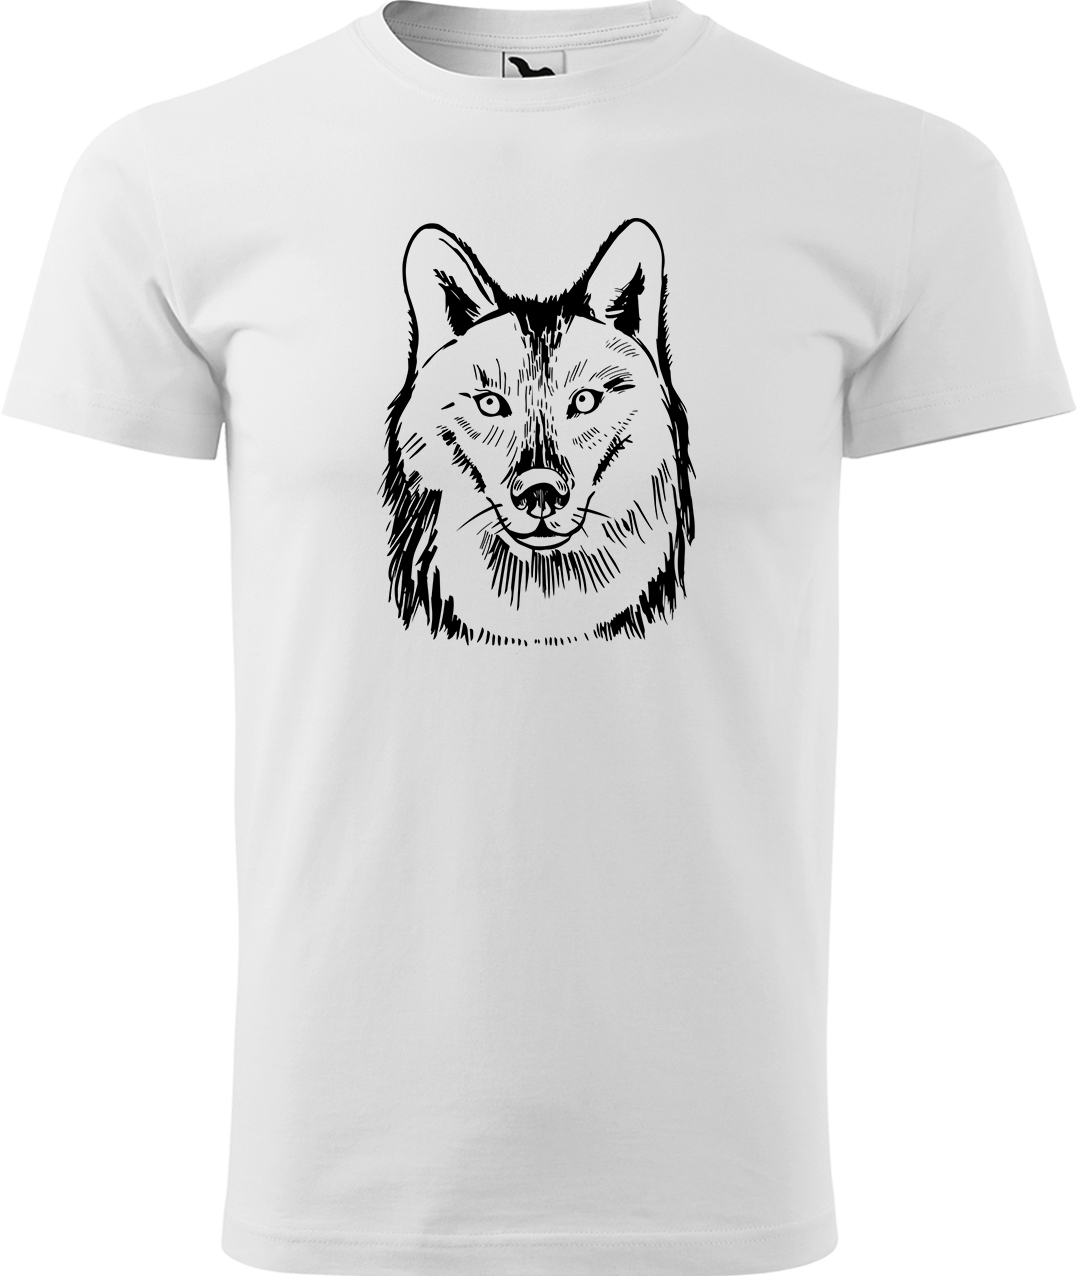 Pánské tričko s vlkem - Kresba vlka Velikost: M, Barva: Bílá (00), Střih: pánský